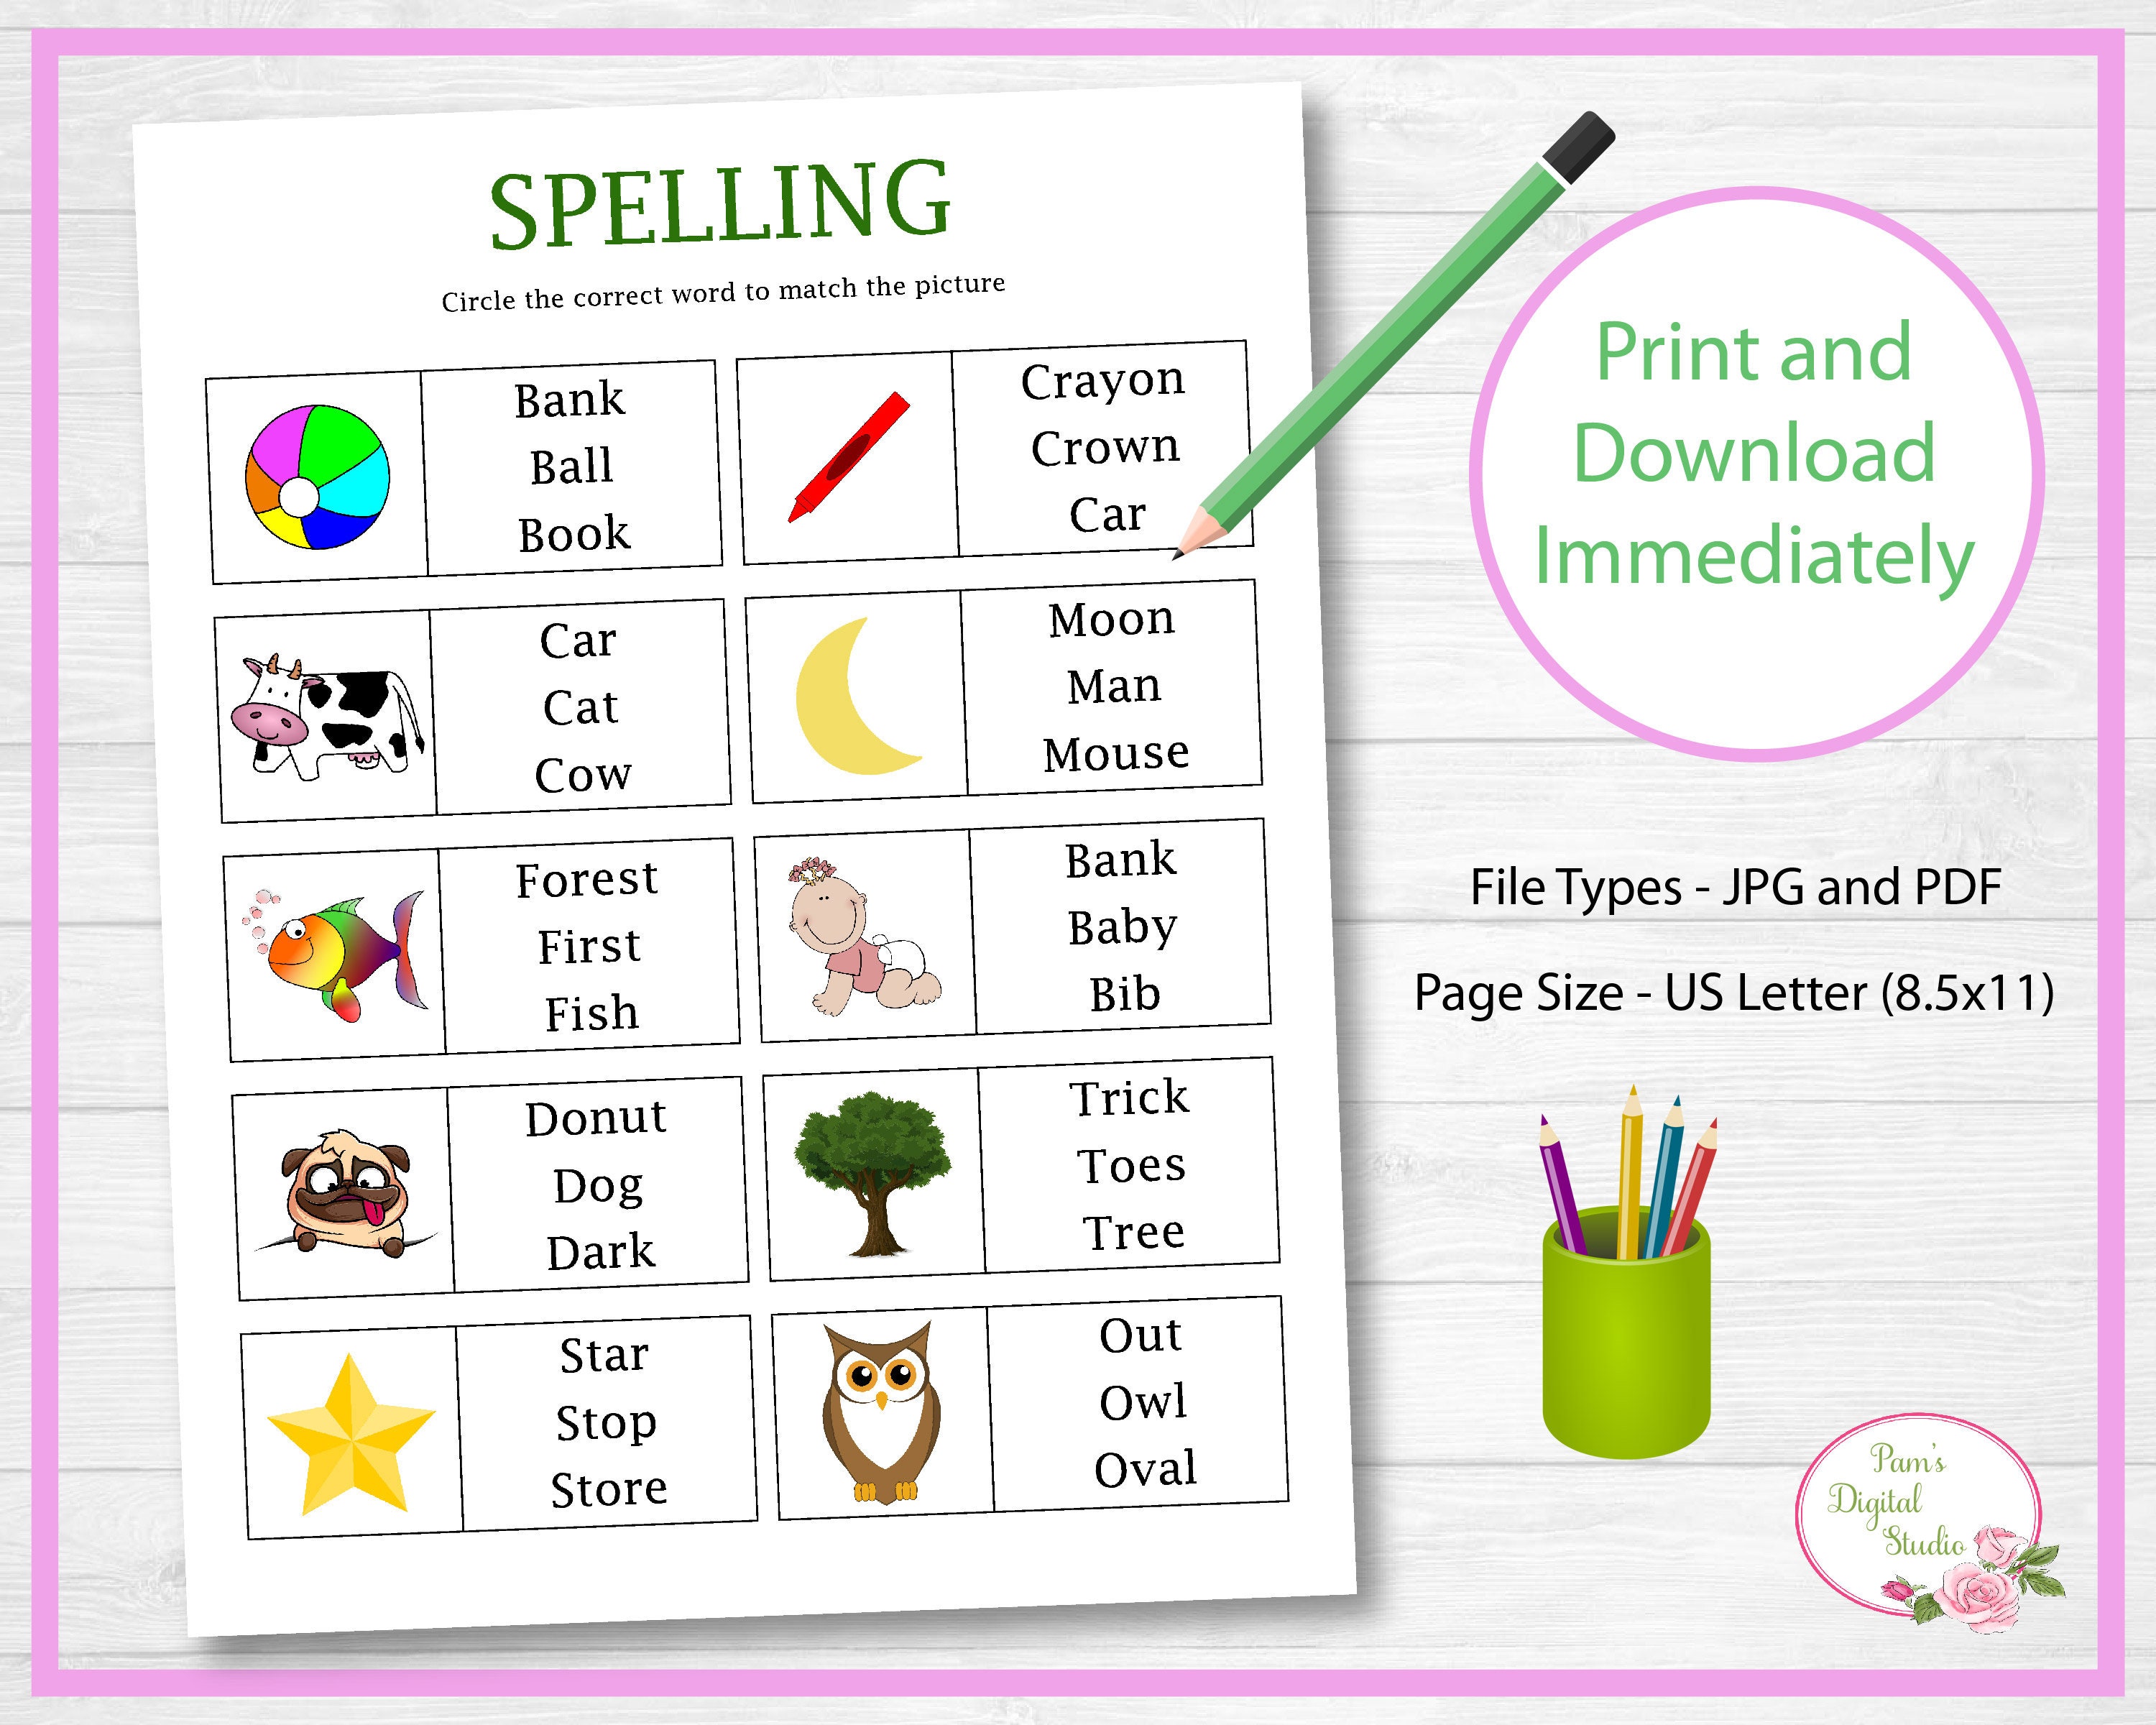 learn-to-spell-spelling-worksheet-learning-worksheet-child-etsy